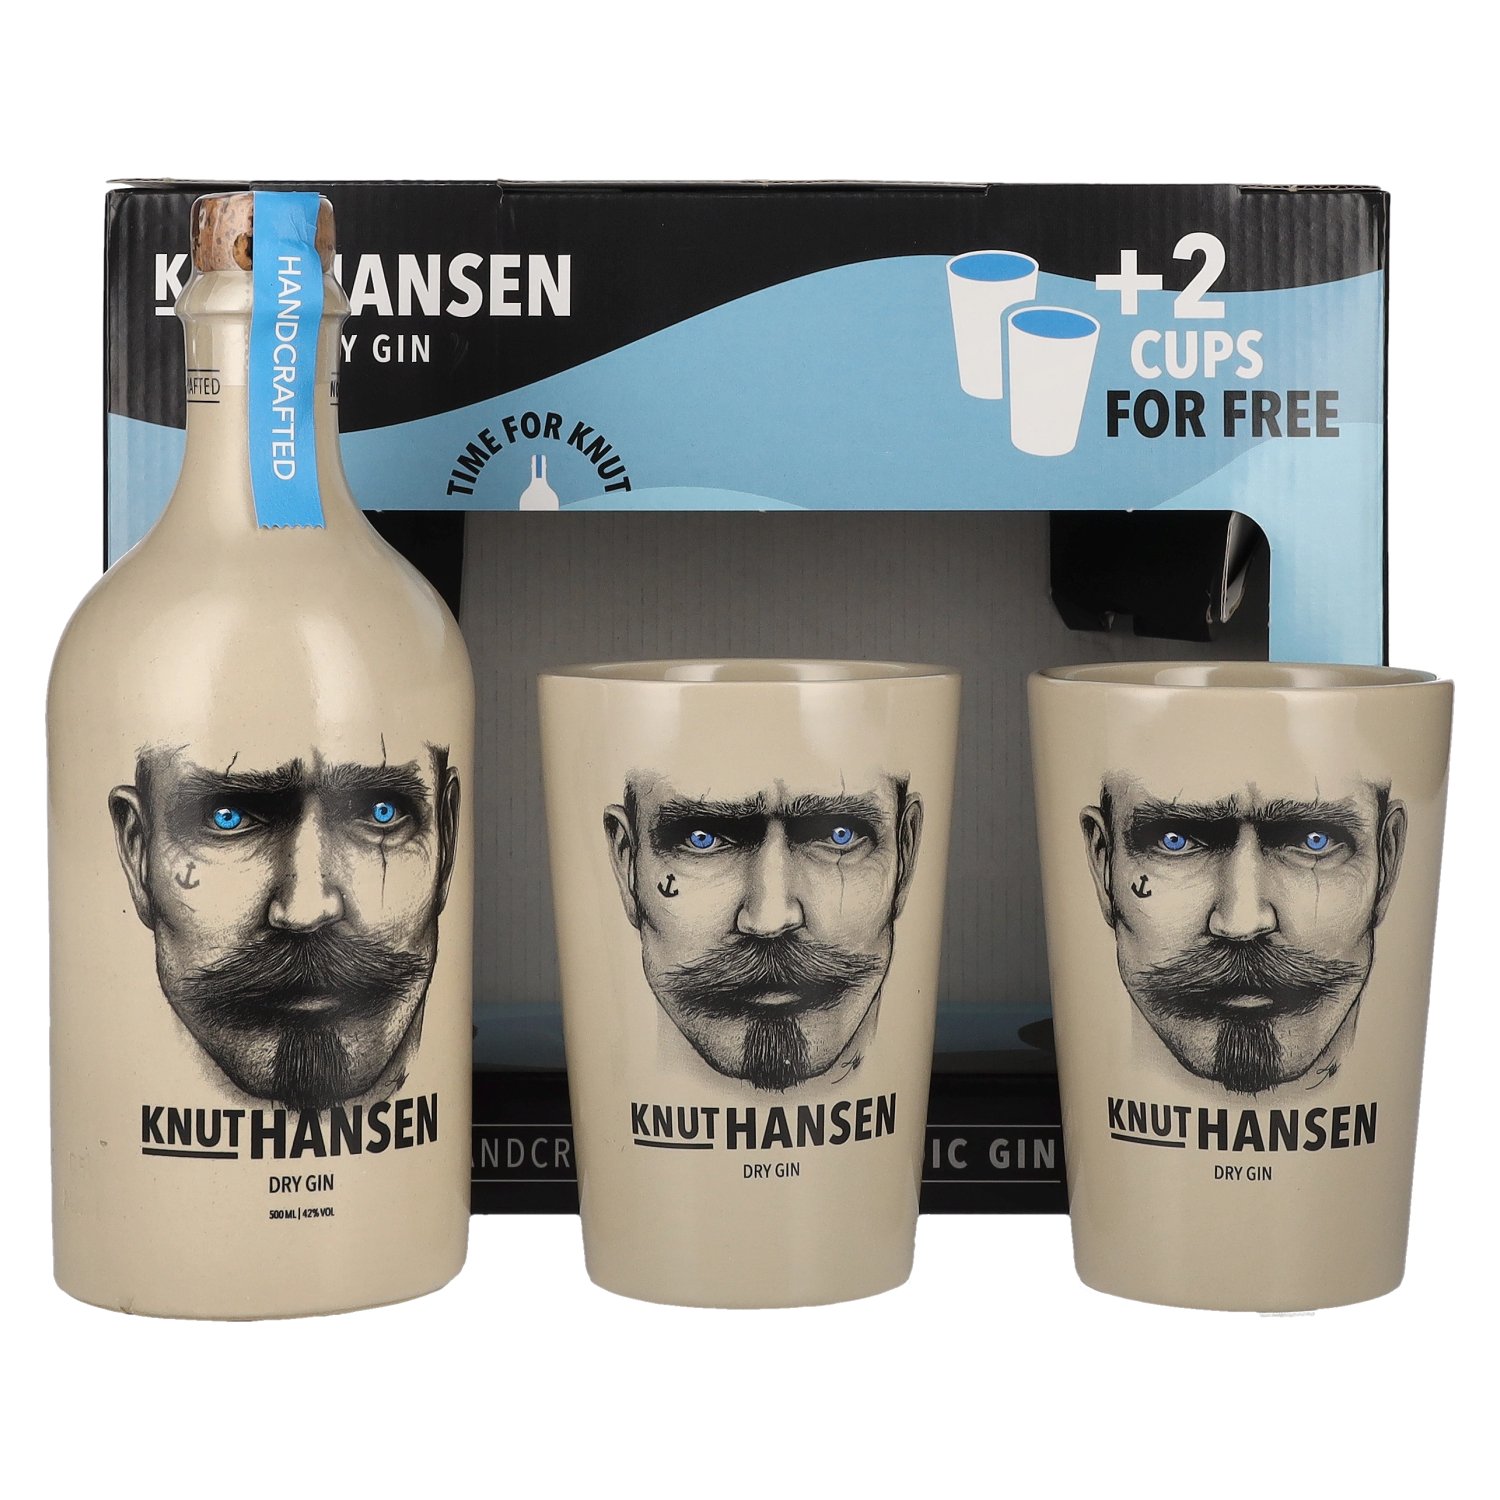 Knut Hansen Dry Gin 42% Vol. 0,5l in Giftbox with 2 Keramiktassen